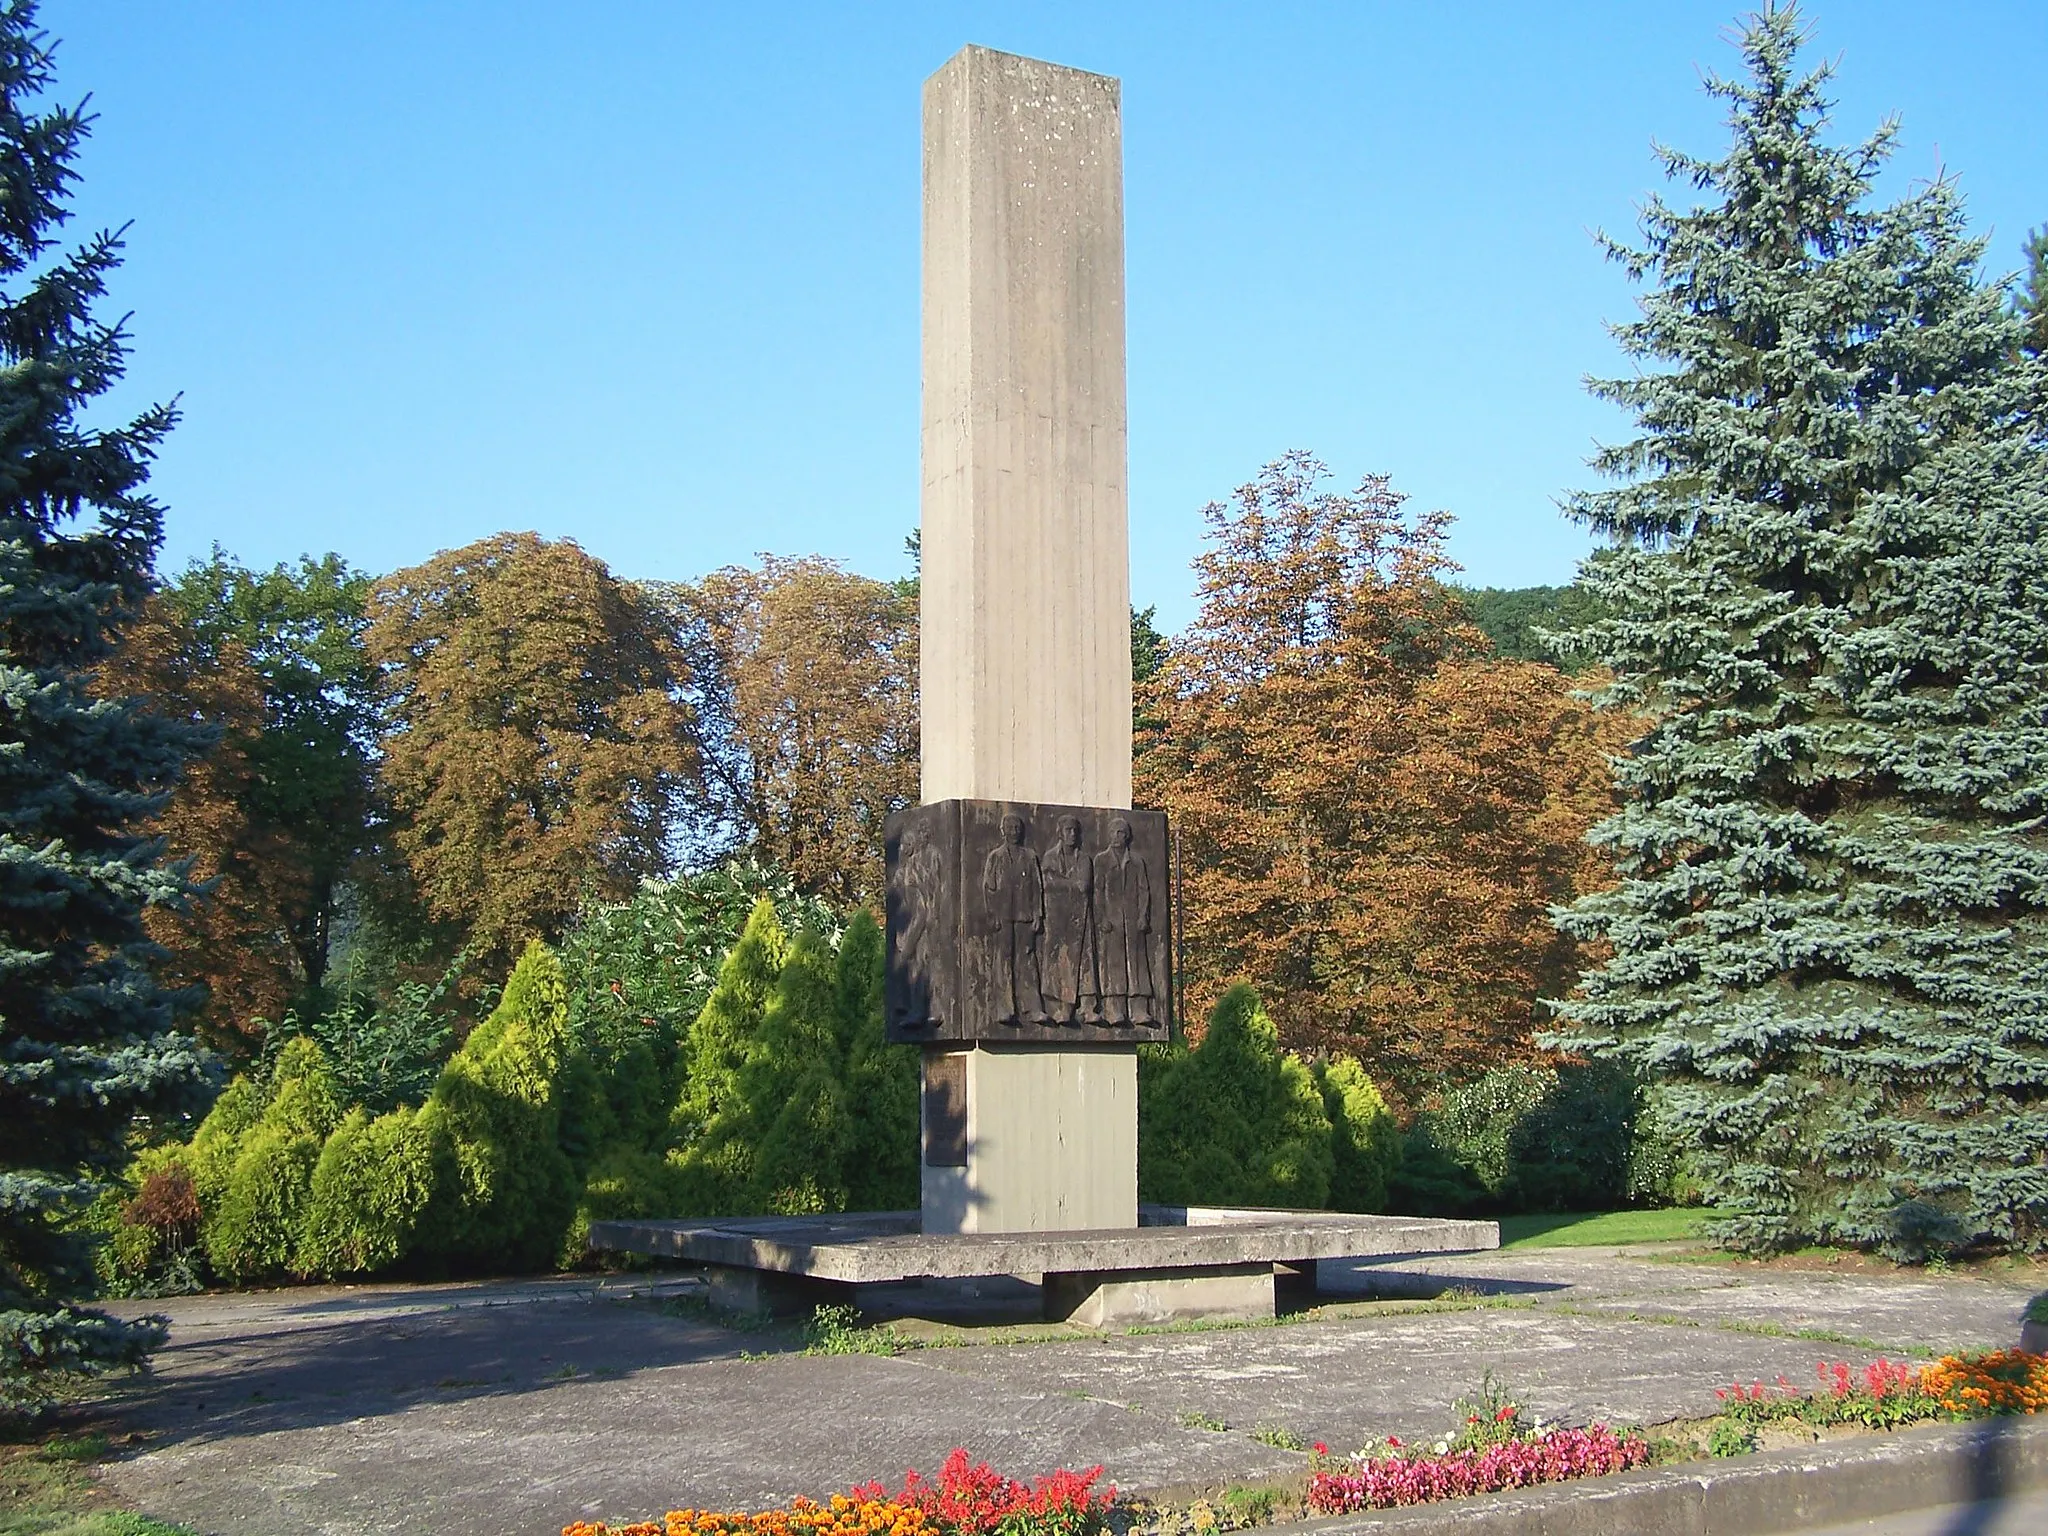 Image of Moravskoslezsko